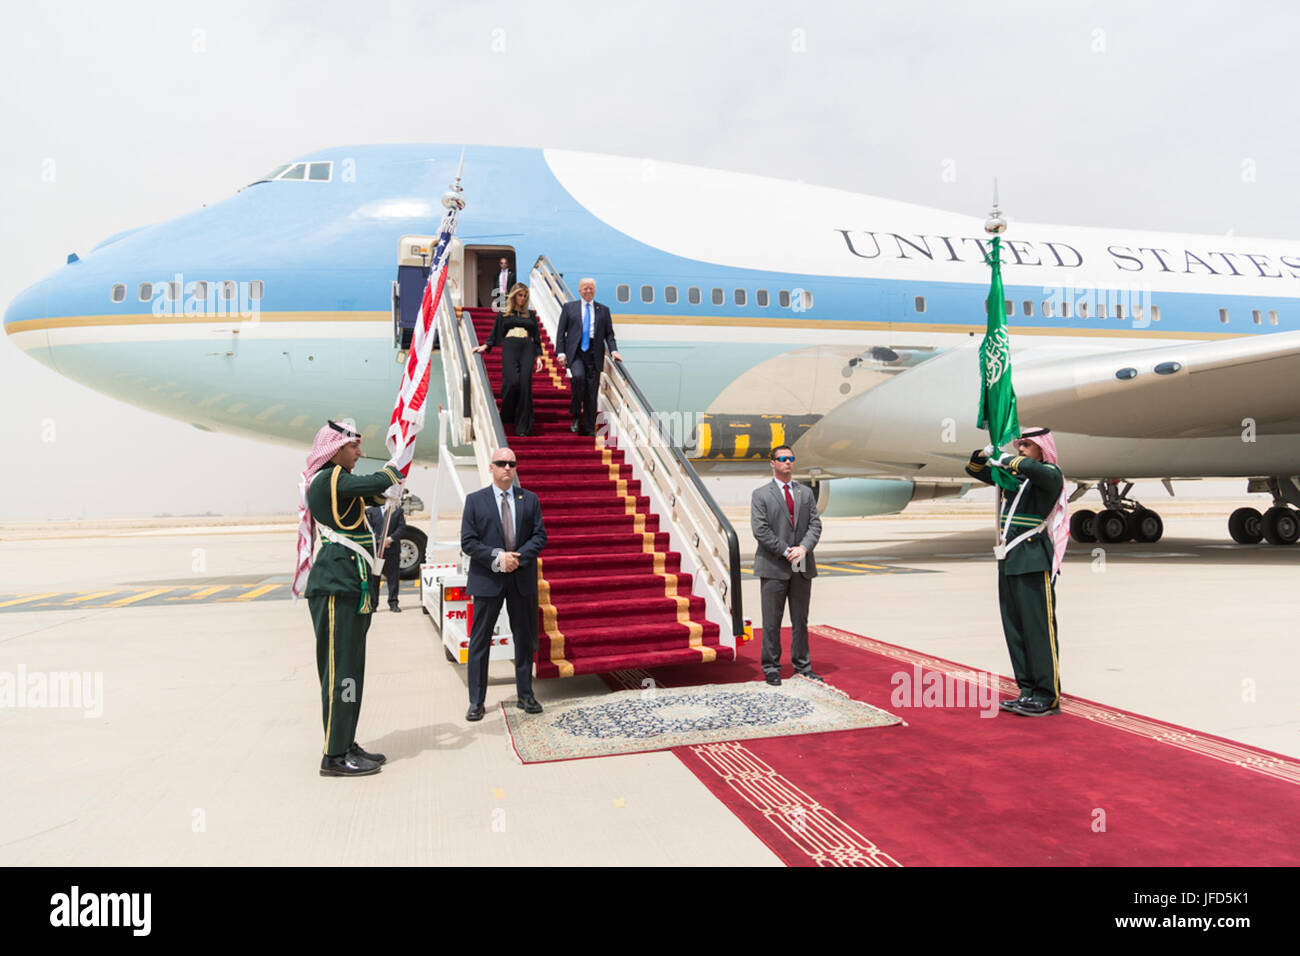 Le président Donald Trump et la Première Dame Melania Trump descendre les escaliers, tapis rouge Samedi, 20 mai 2017, à leur arrivée à l'Aéroport International King Khalid à Riyad, Arabie saoudite. Officiel de la Maison Blanche (photo par Shealah Craighead) Banque D'Images